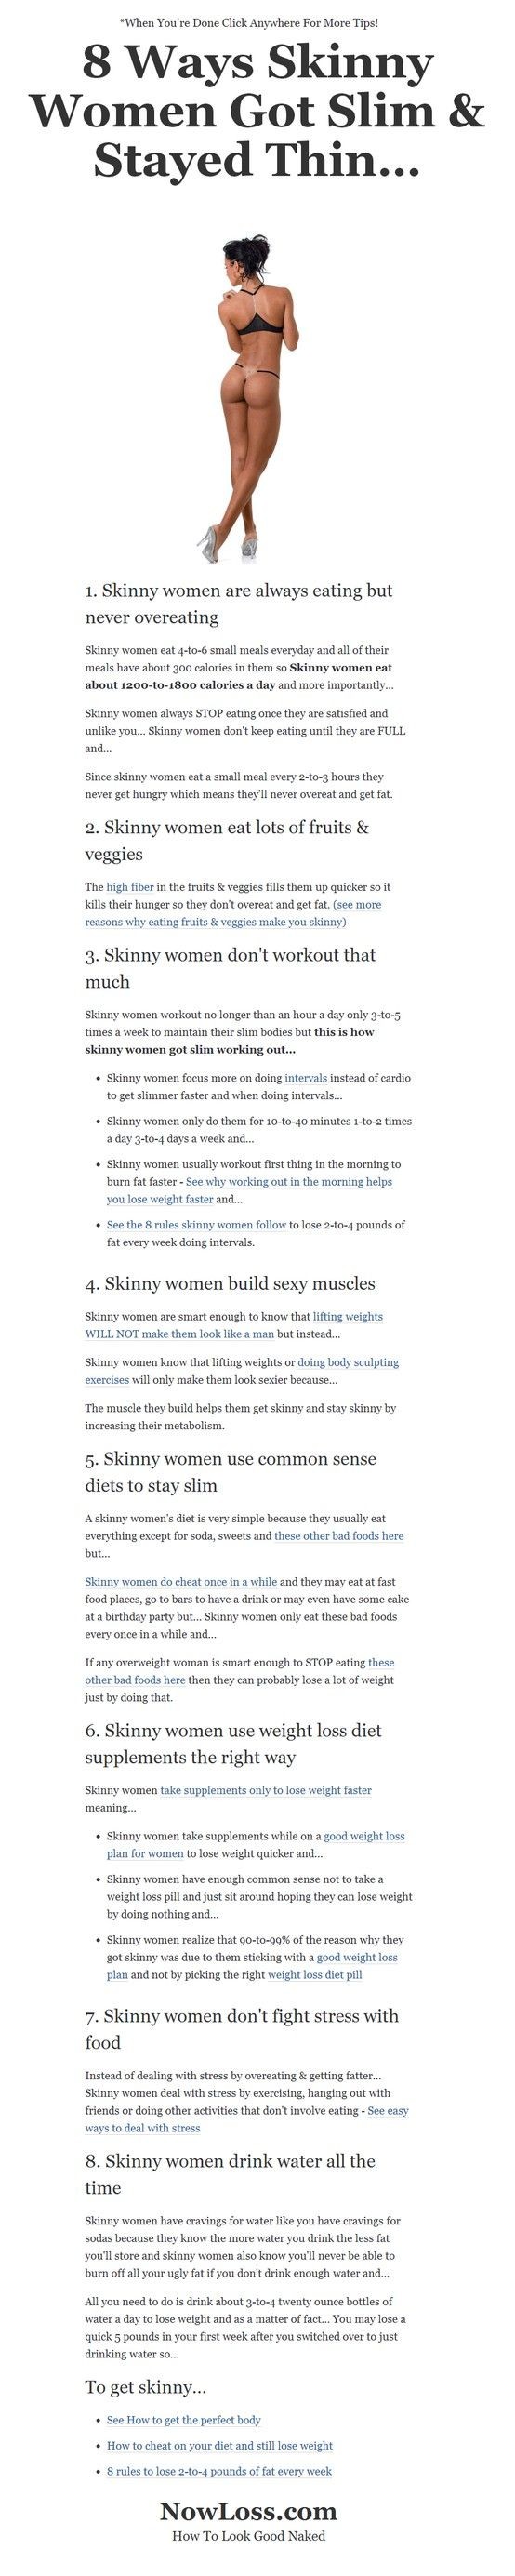 How skinny women stay skinny